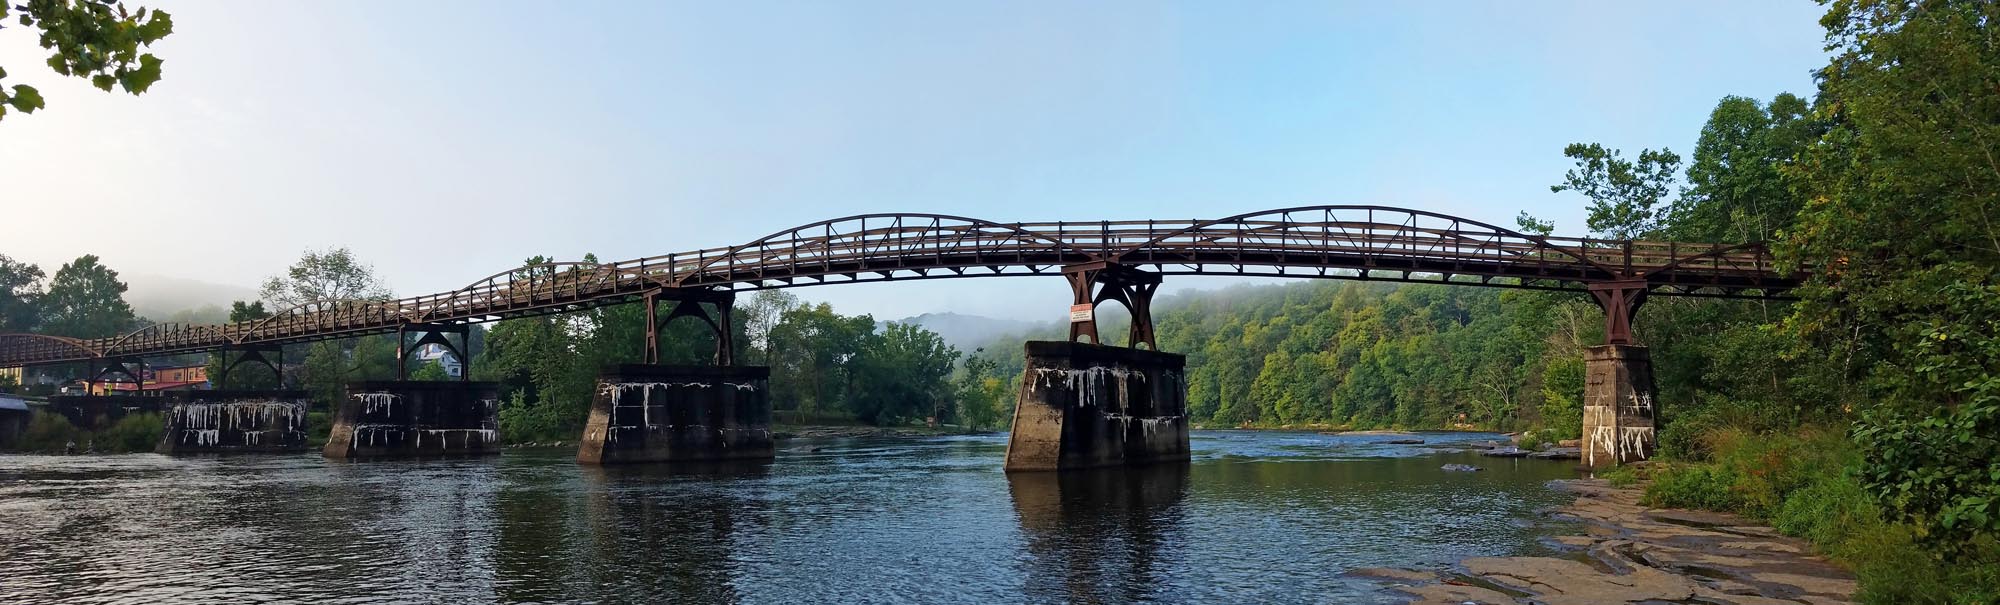 Ohiopyle low bridge